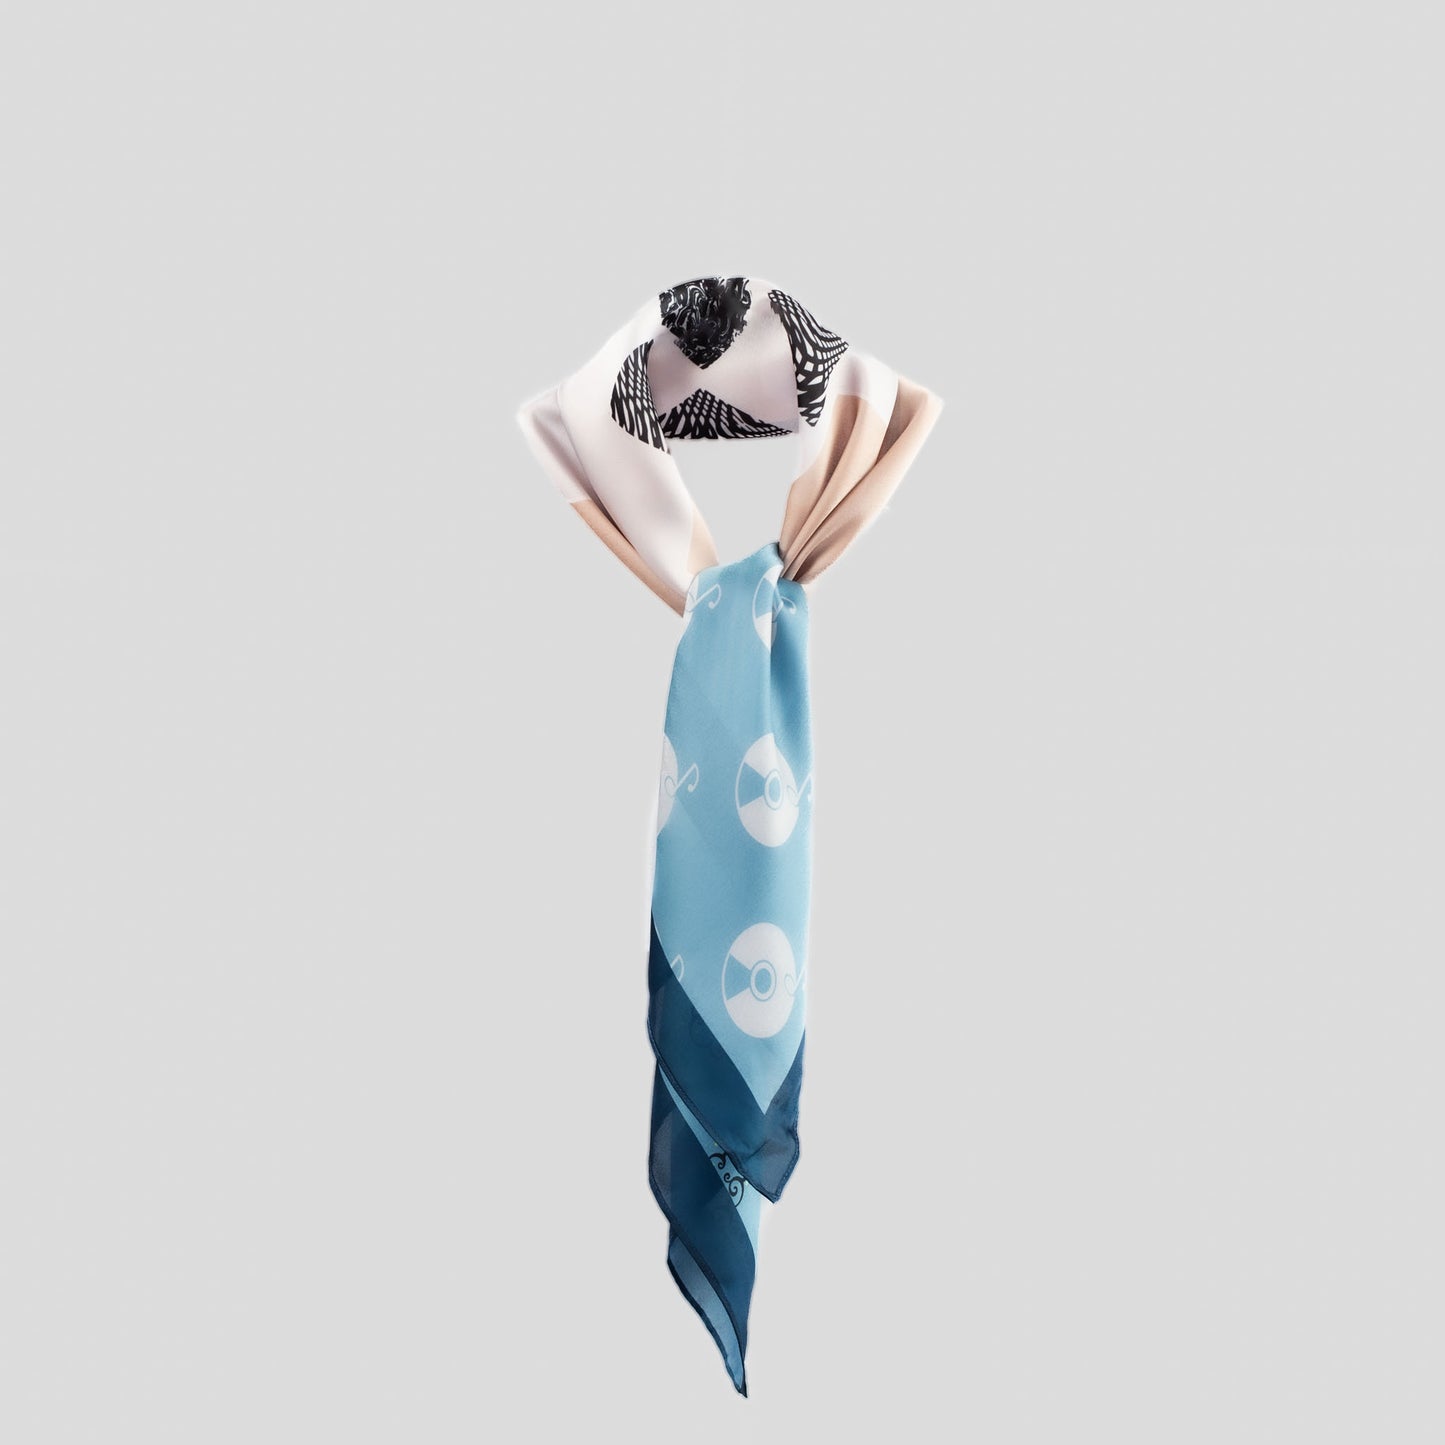 Eșarfă damă din satin cu imprimeu abstract lifestyle, 70 x 70 cm - Albastru, Bej